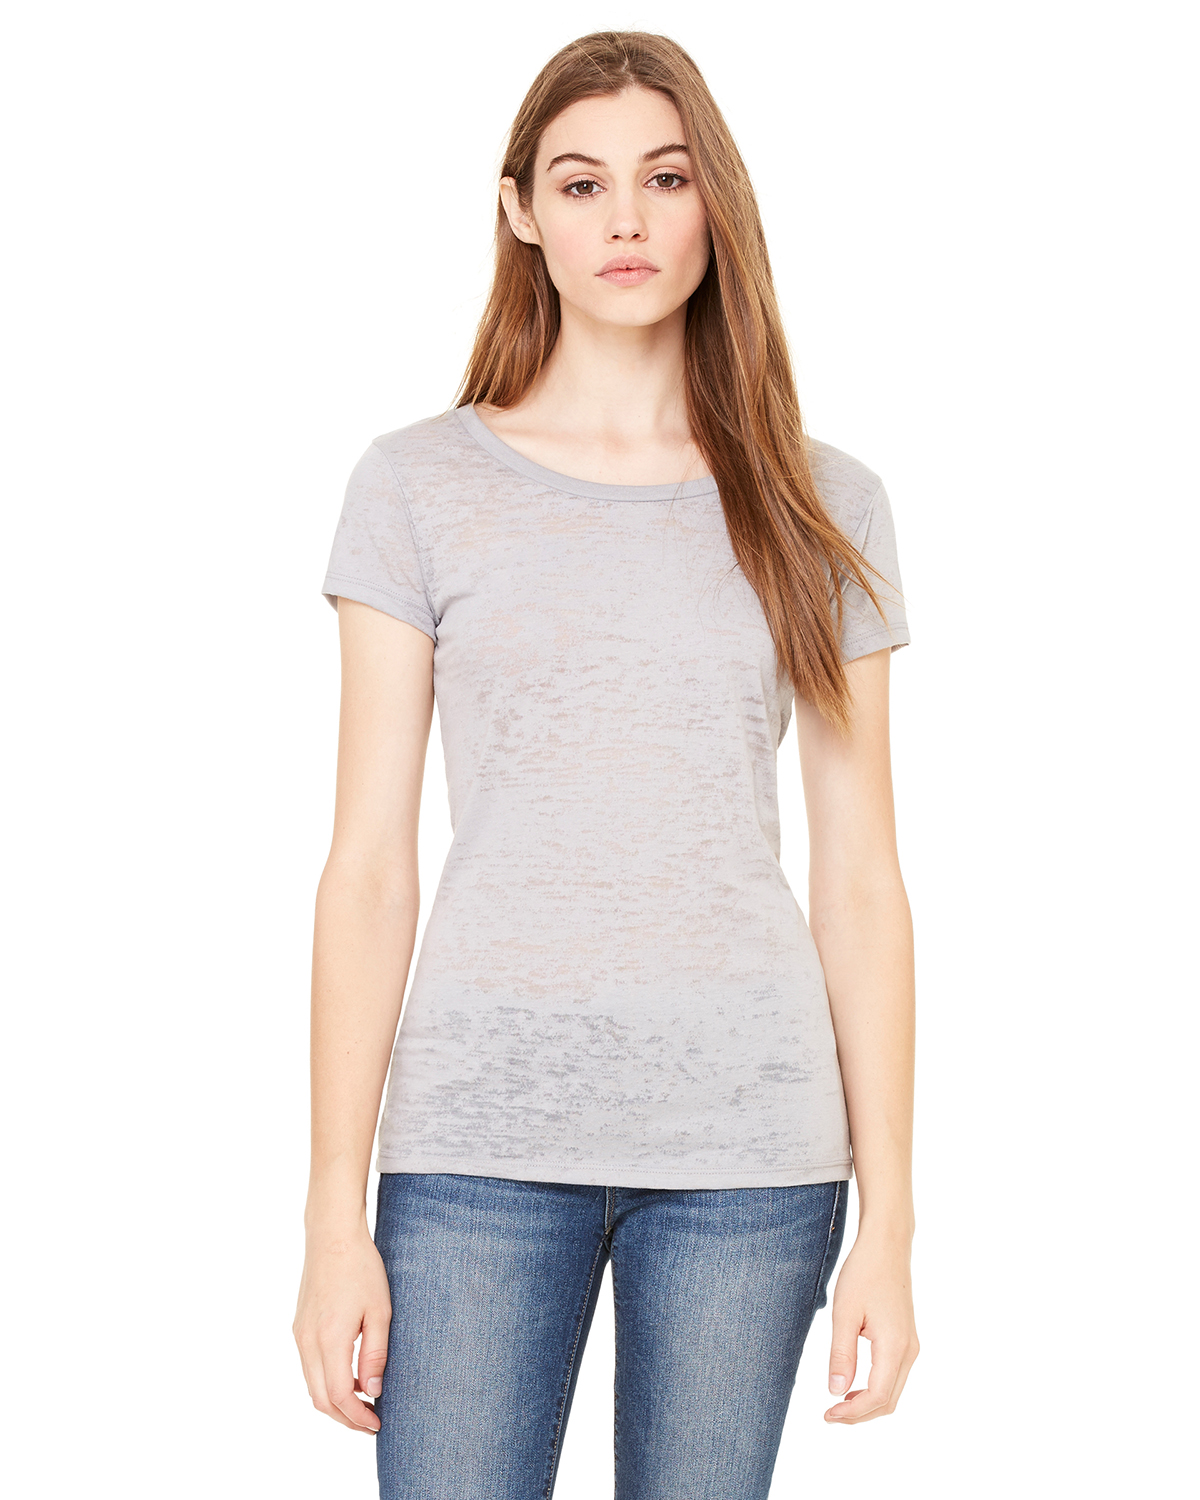 Bella - Ladies' Burnout V-Neck T-Shirt - 8605 $9.38 - Women's T-Shirts